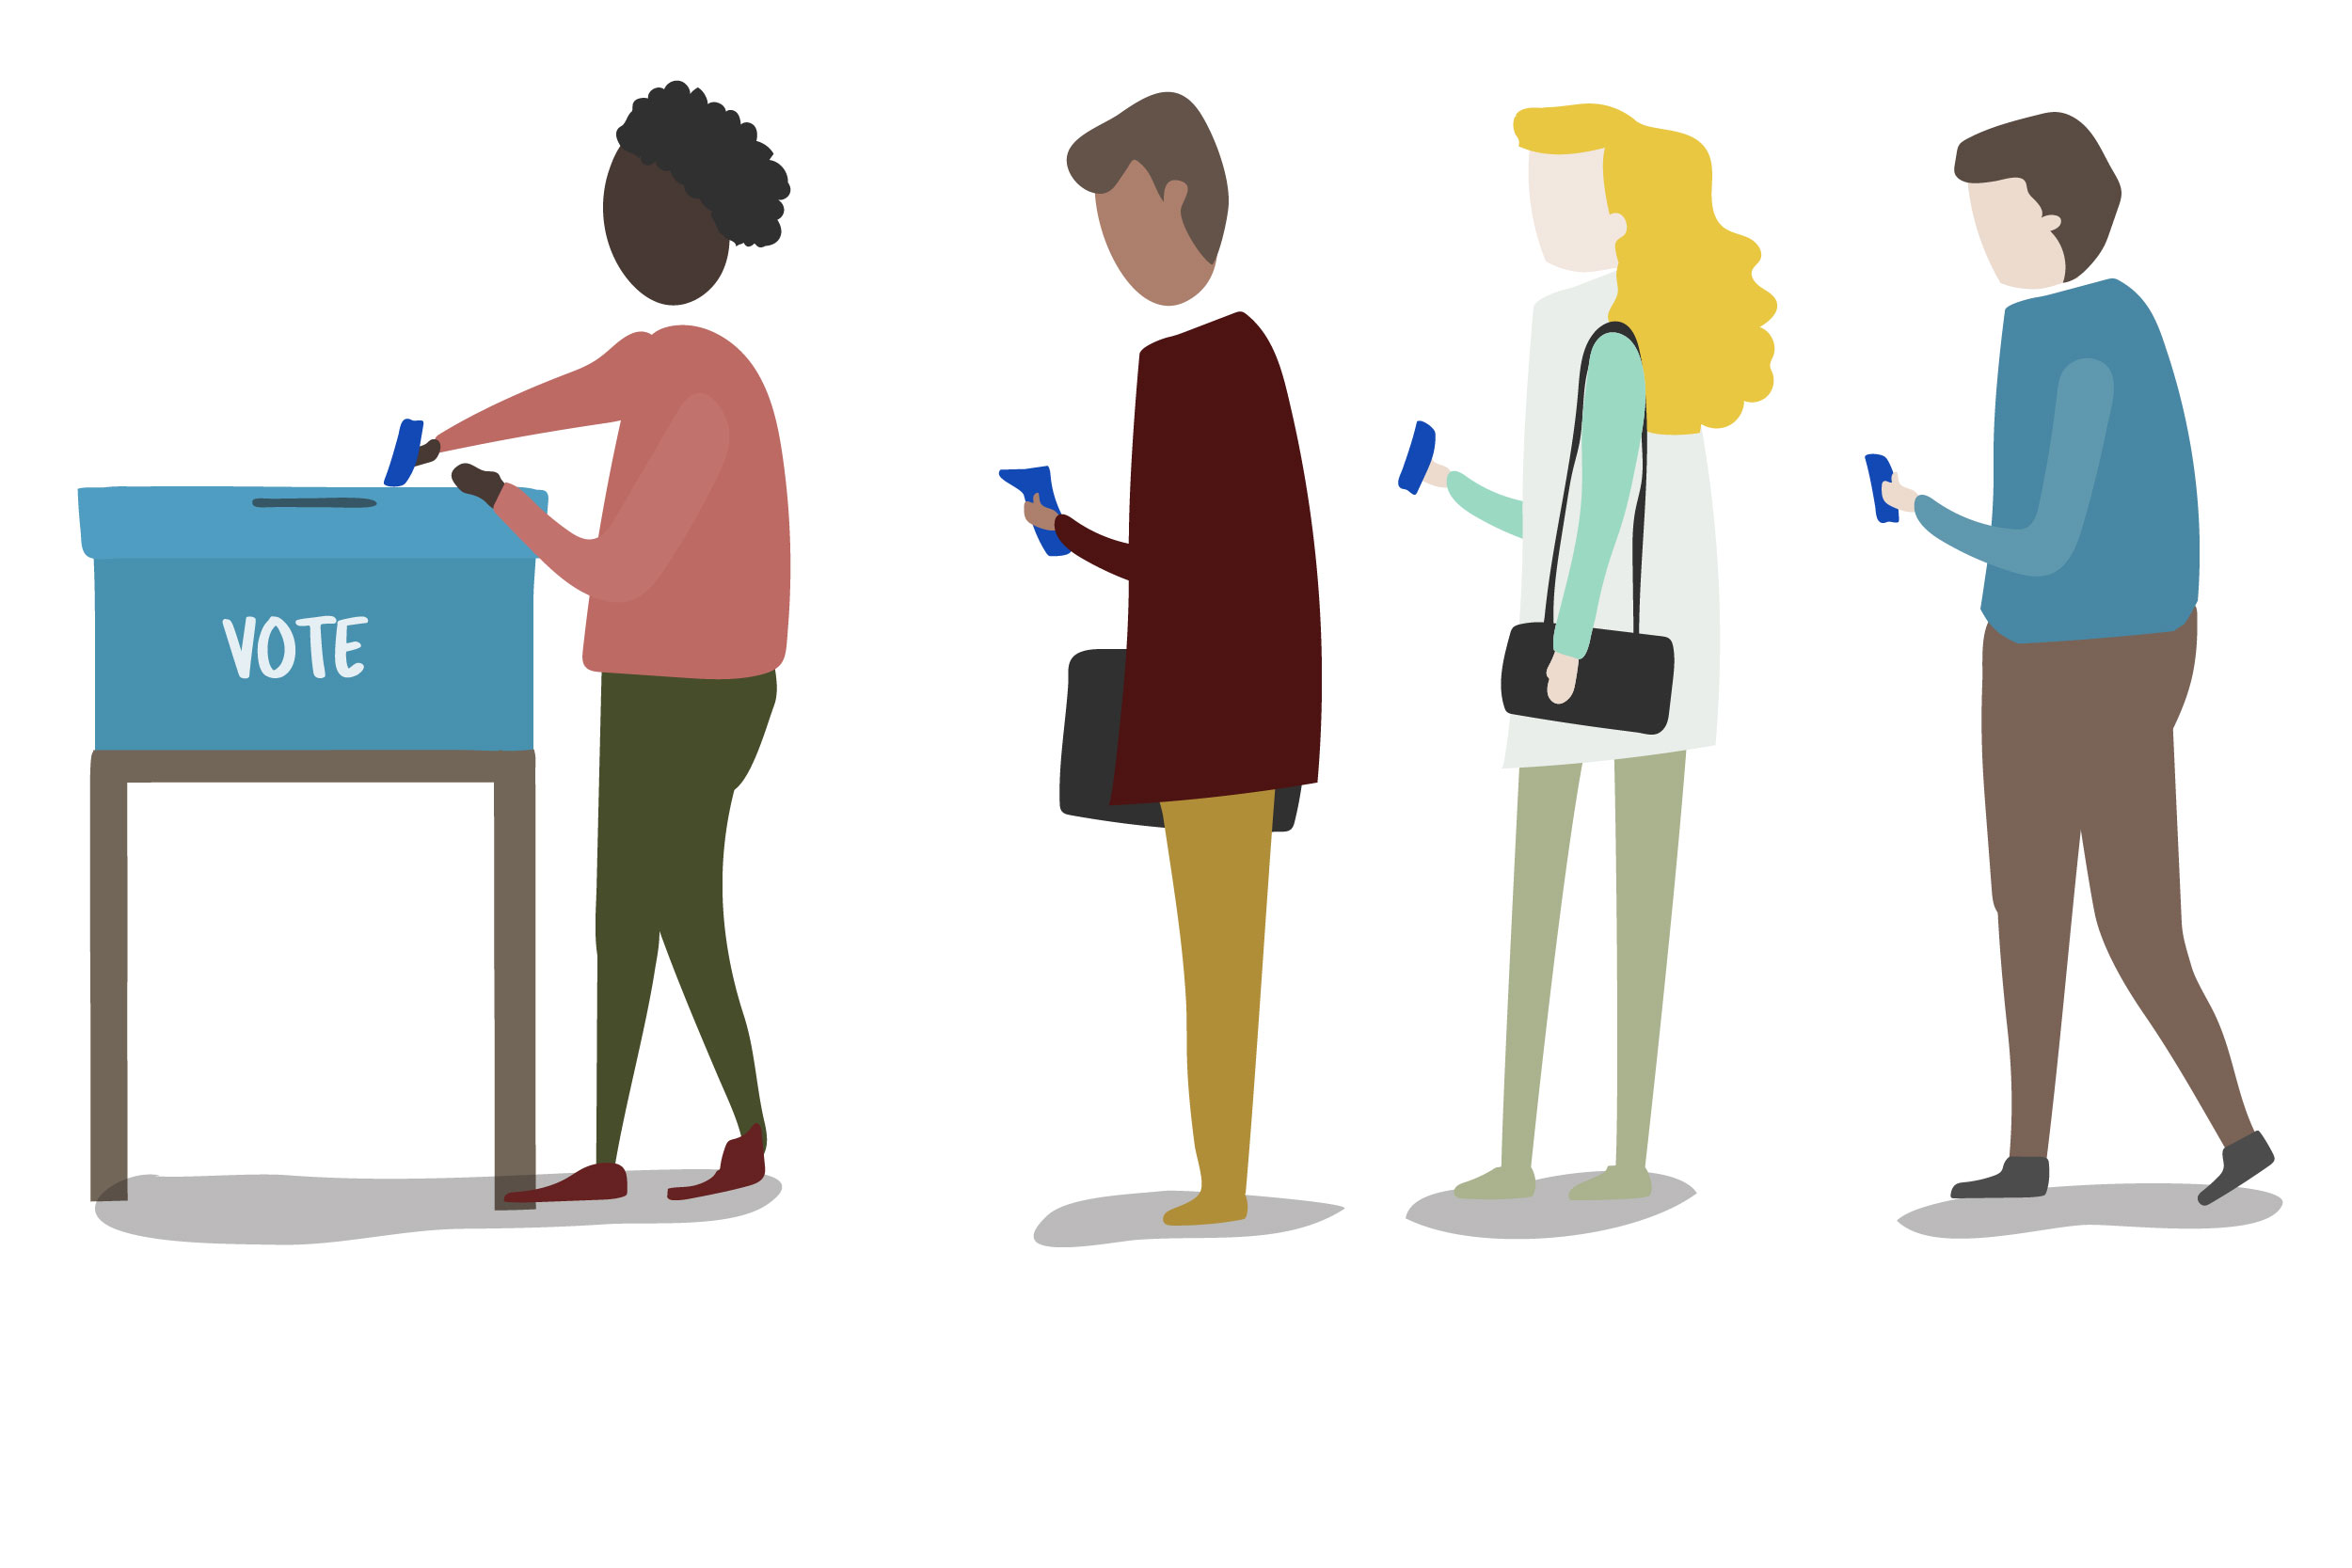 Ilustração mostra duas mulheres e dois homens em uma fila. Cada um deles está com um papel na mão. A primeira pessoa da fila está inserindo o papel dentro de uma urna.